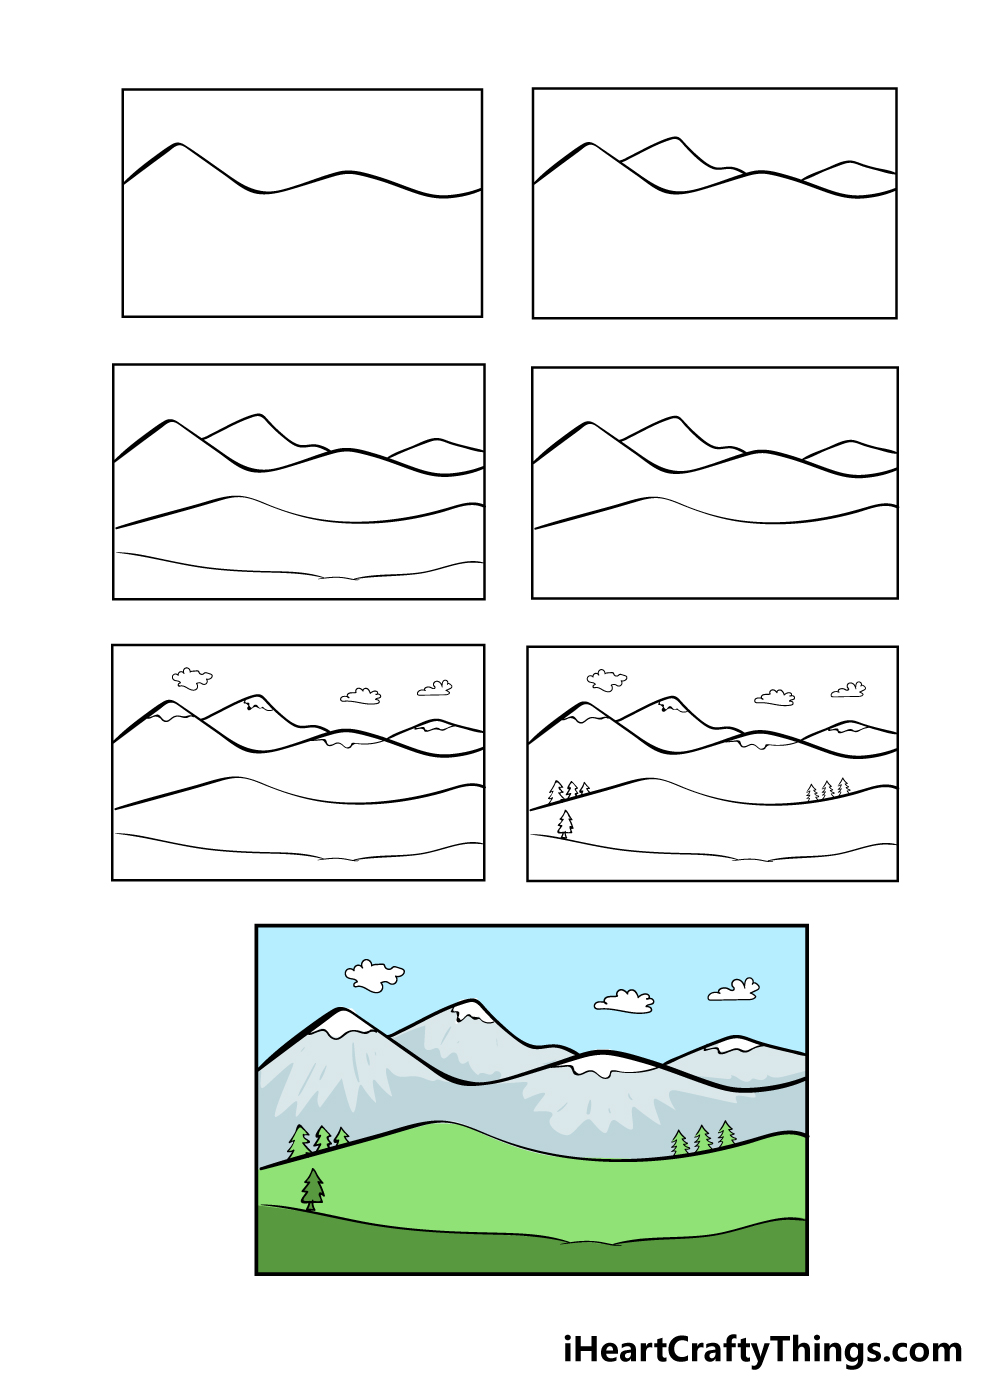 cách vẽ núi trong 7 bước